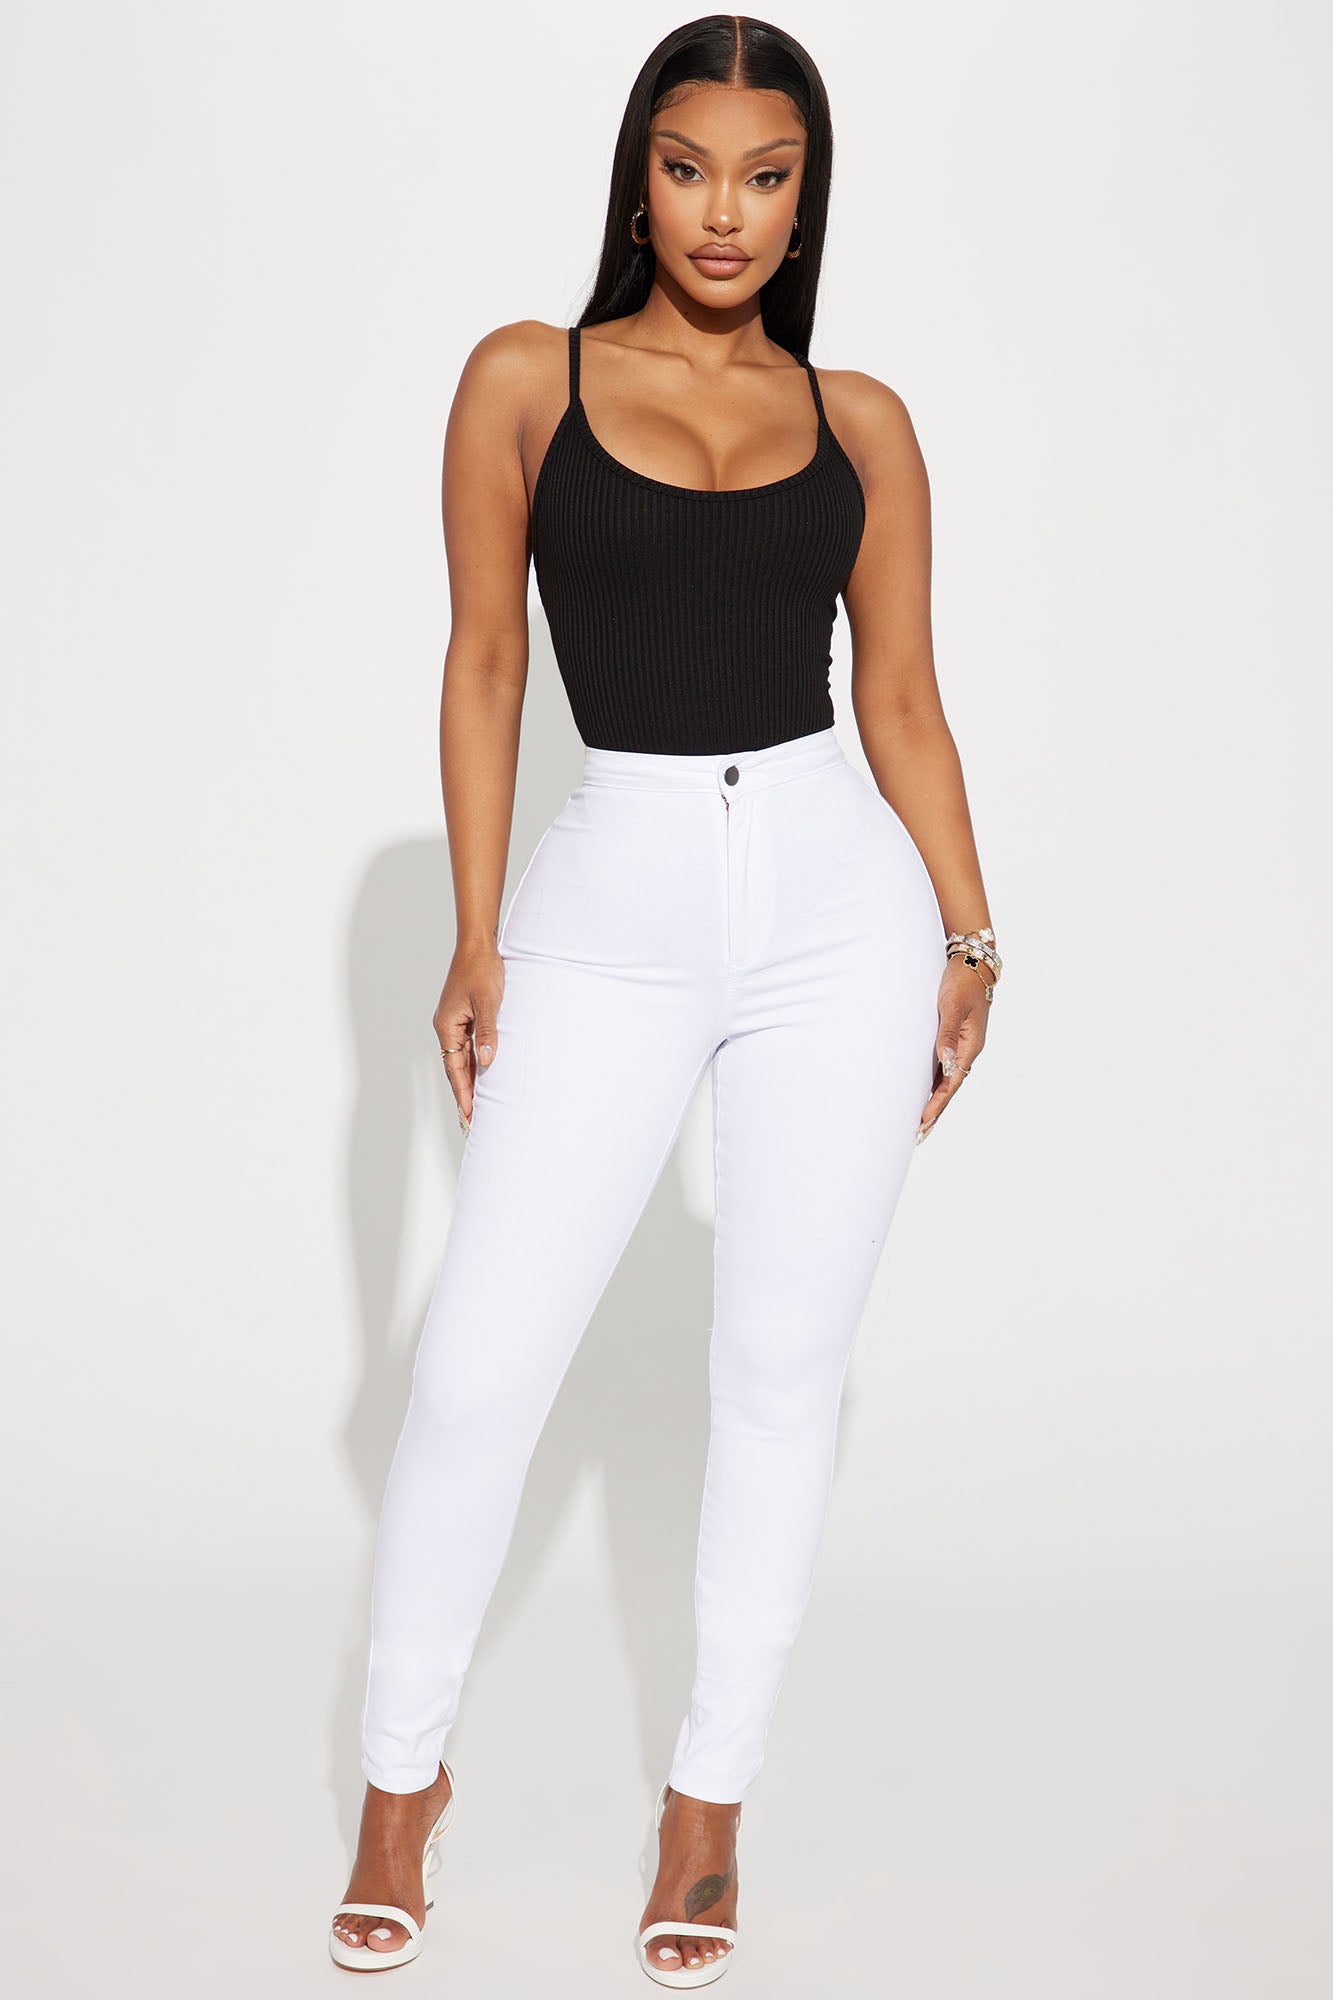 Super High Waist Denim Skinnies - White, Fashion Nova, Jeans